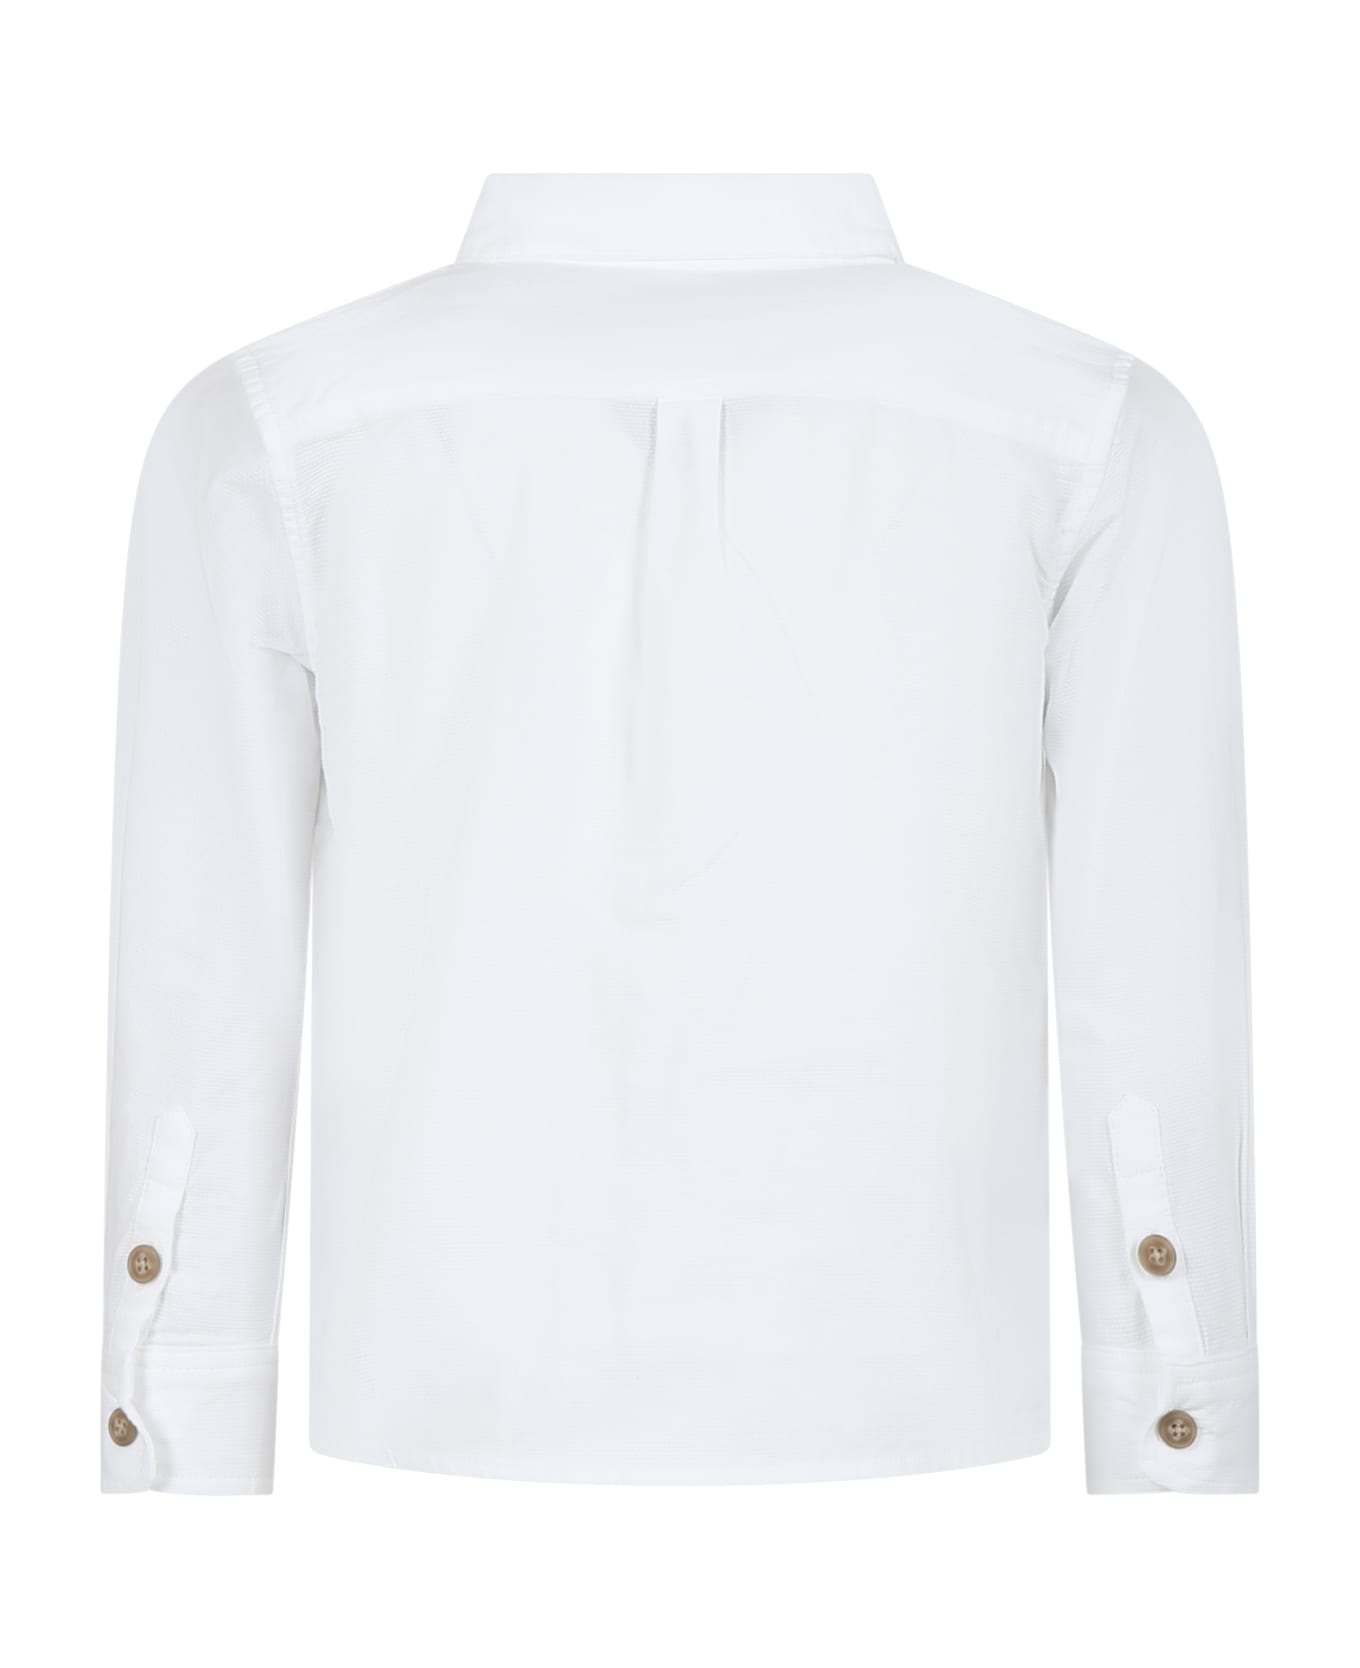 Petit Bateau White Shirt For Boy - White シャツ